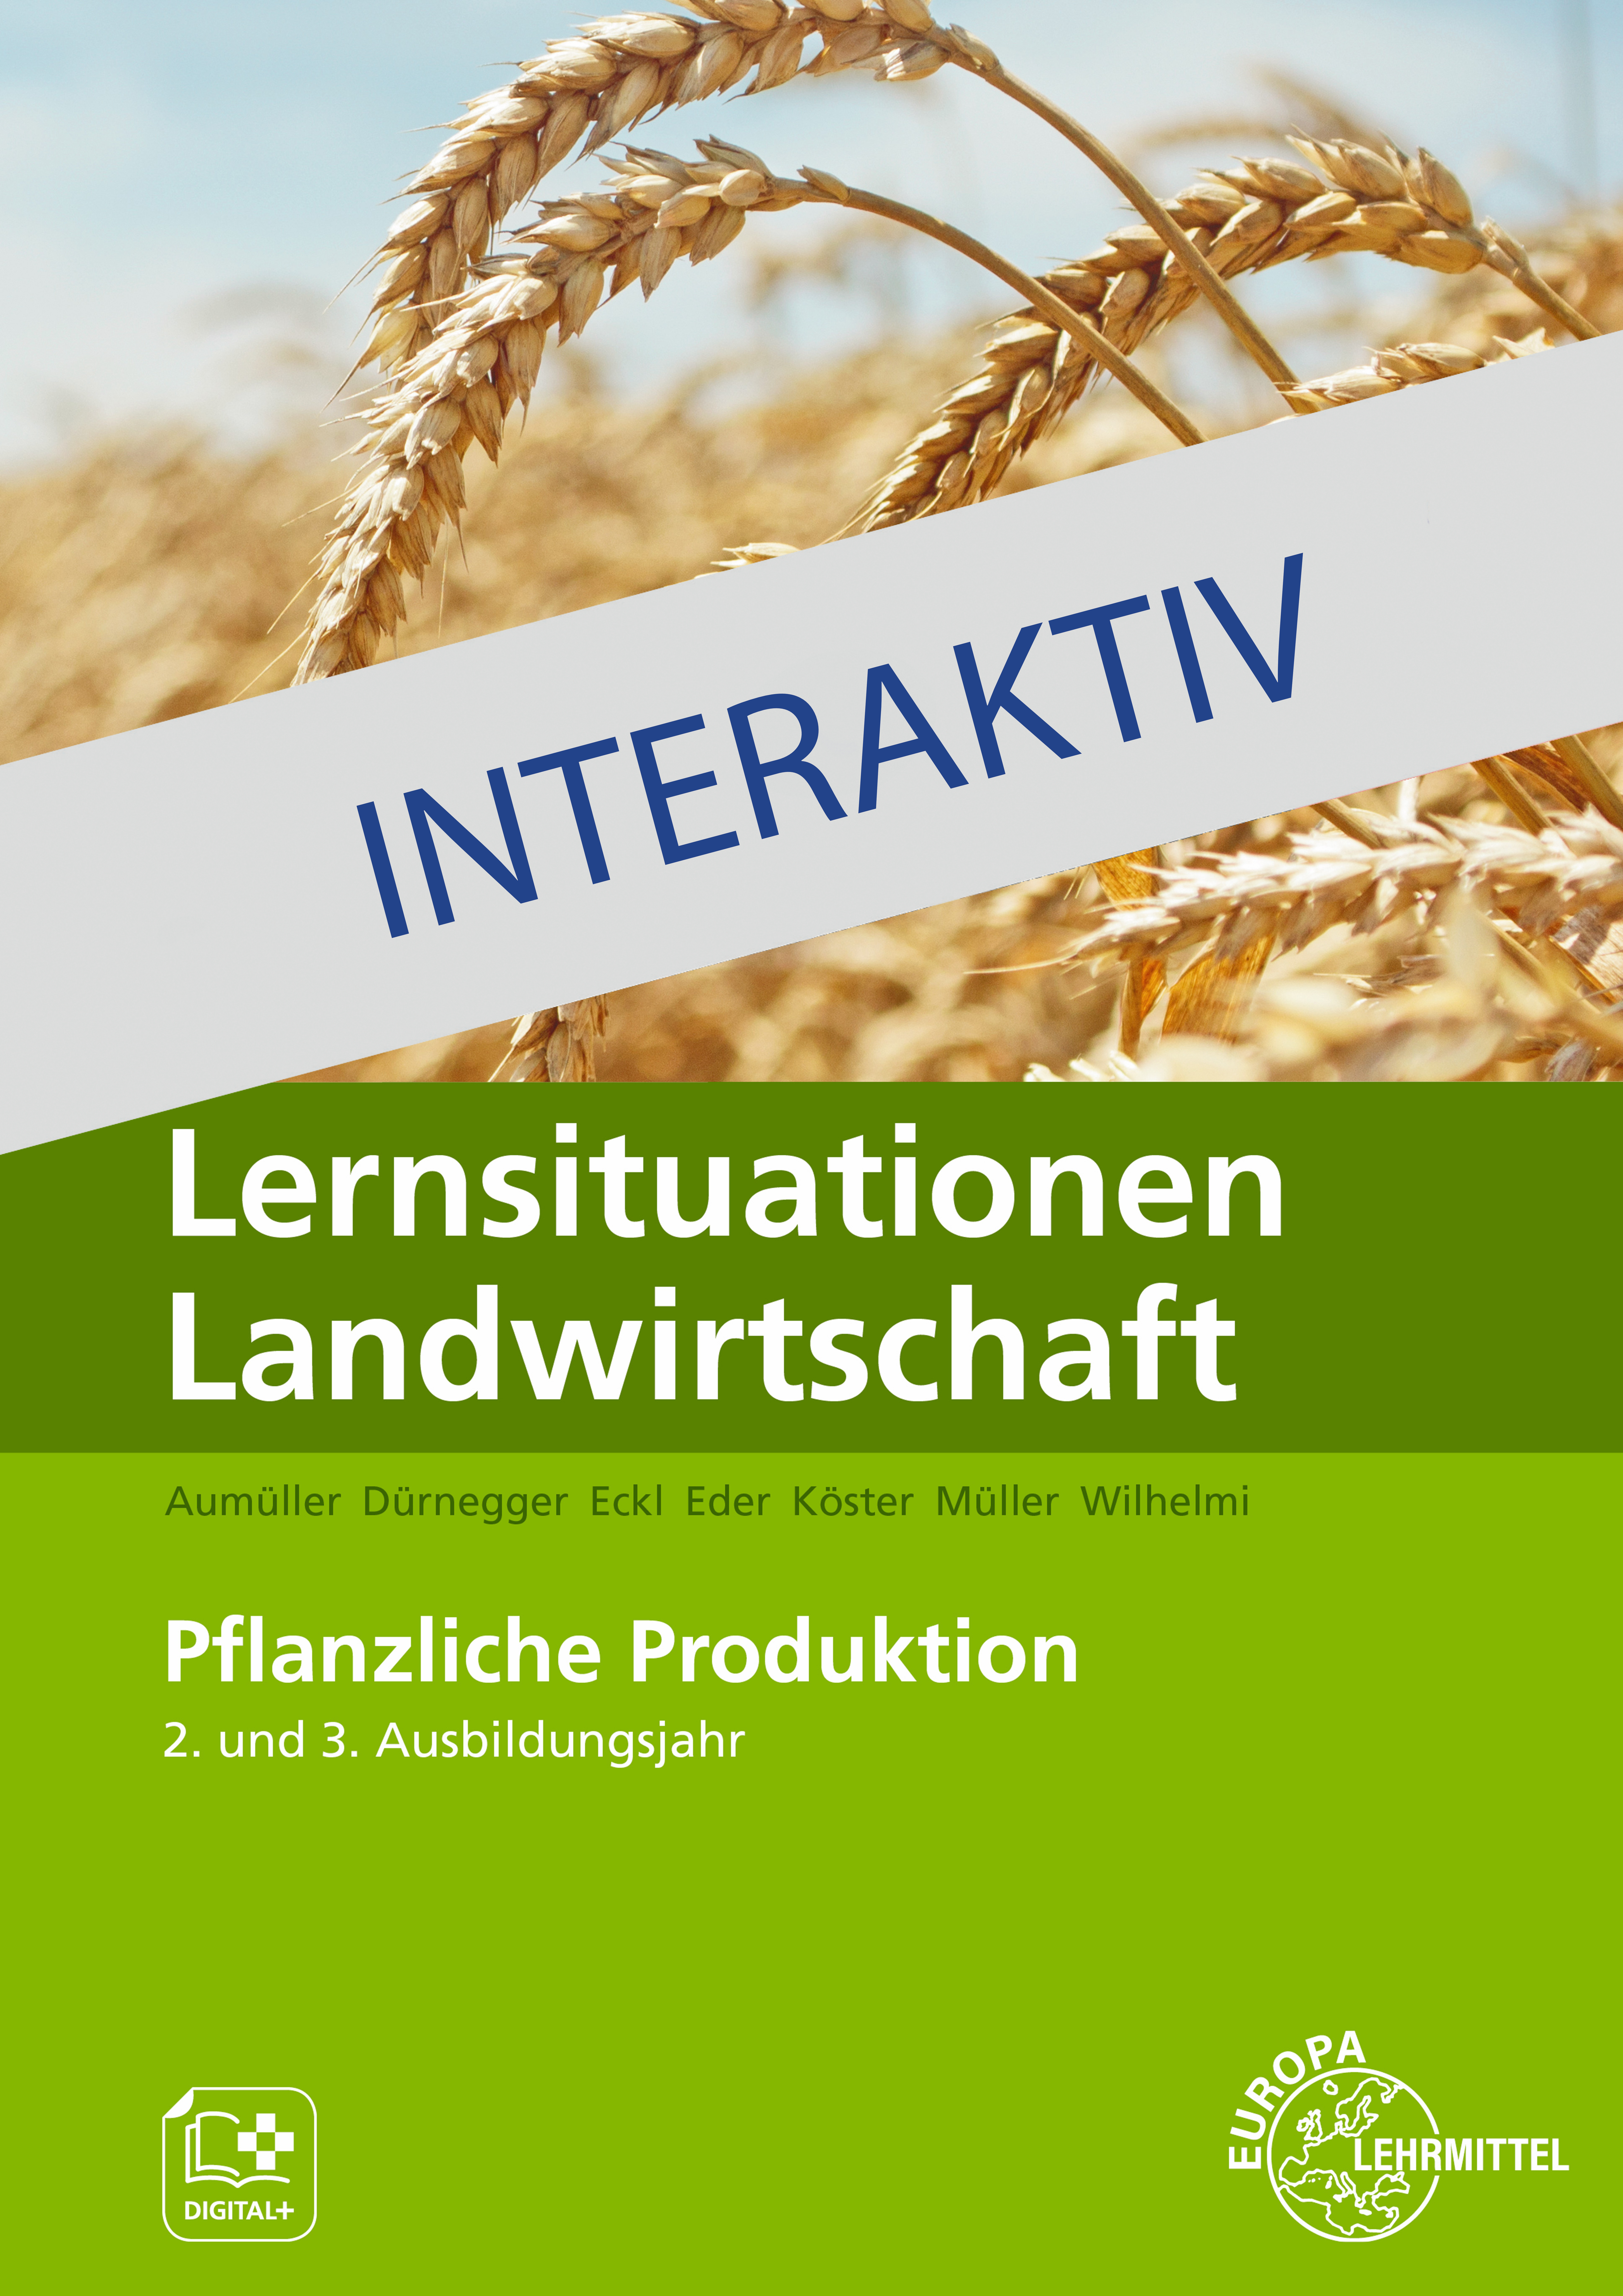 Lernsituationen Landwirtschaft interaktiv